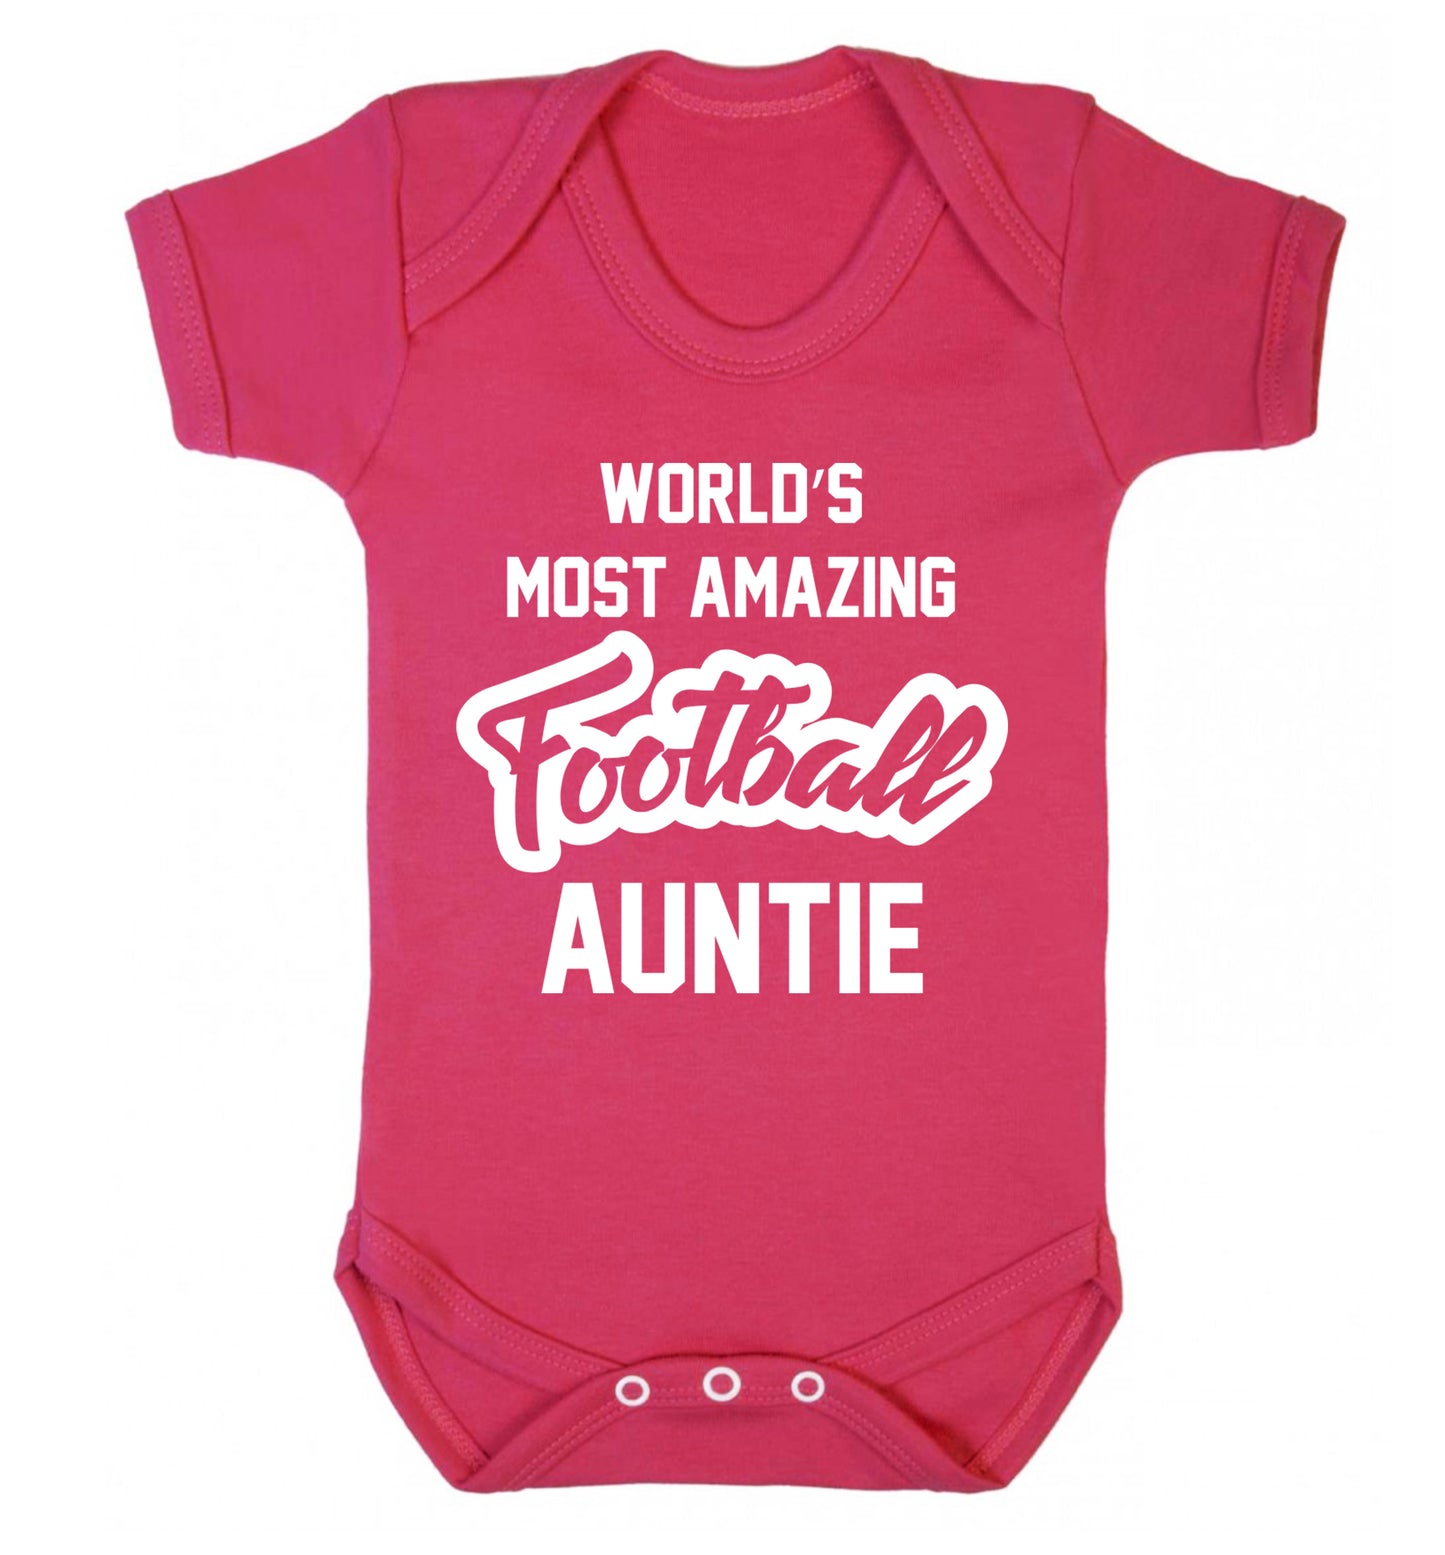 Worlds most amazing football auntie Baby Vest dark pink 18-24 months